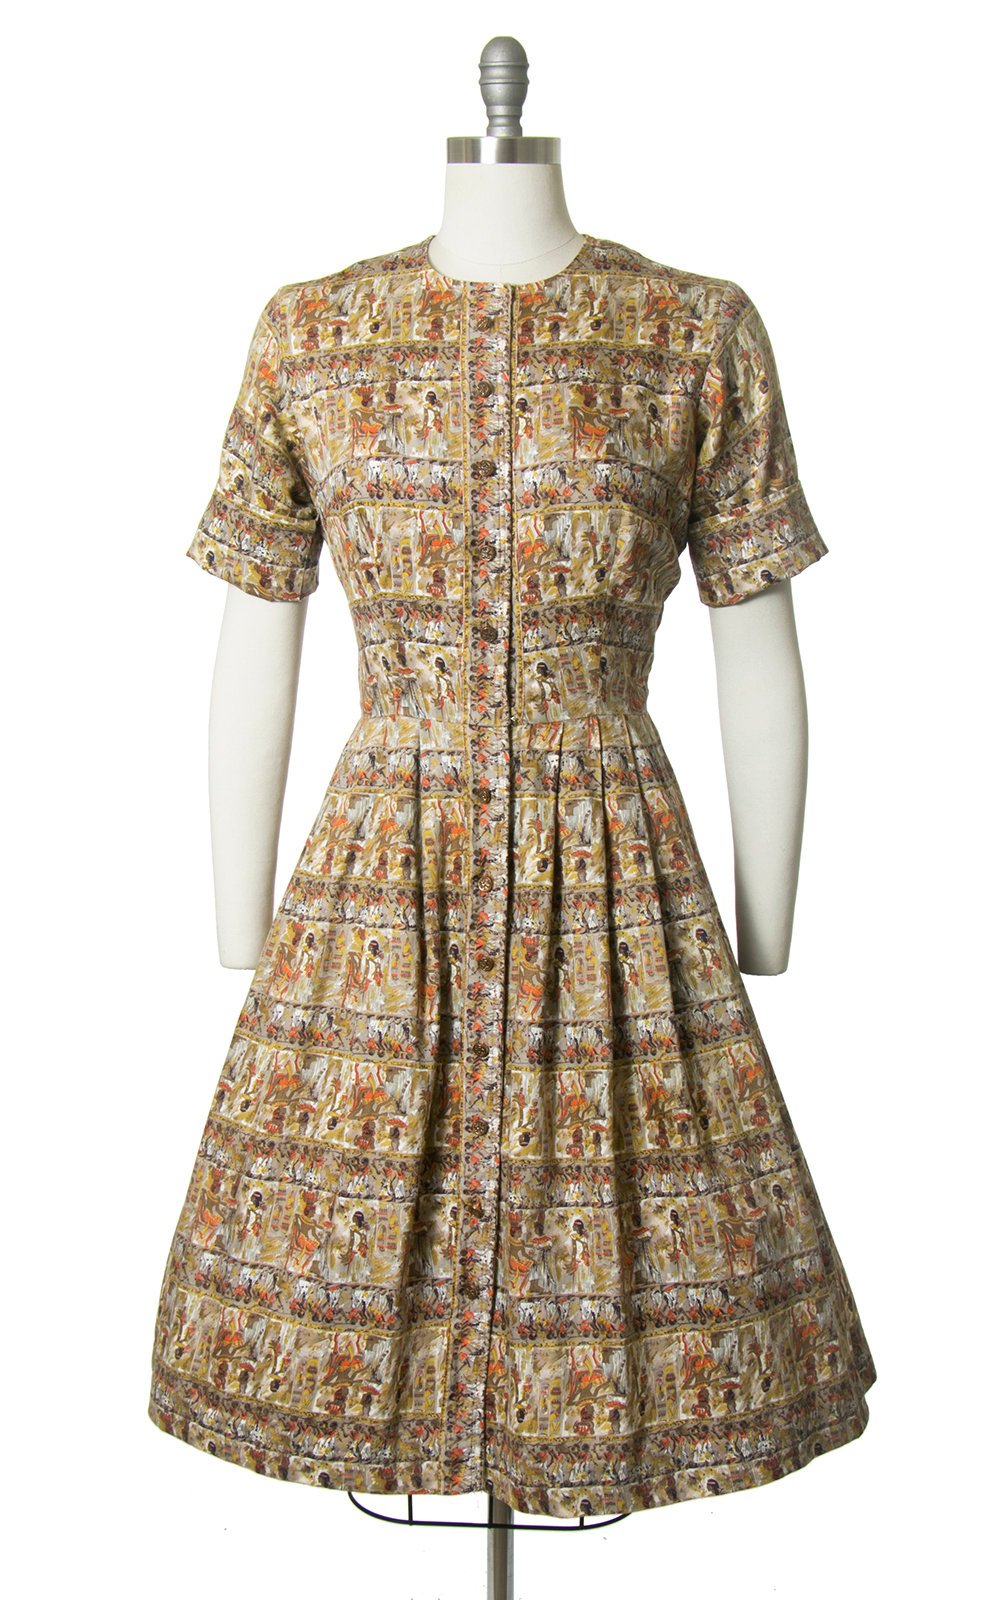 Vintage 1950s Dress | 50s Egyptian Novelty Print Cotton Shirt Dress Full Skirt Shirtwaist Day Dress (medium)